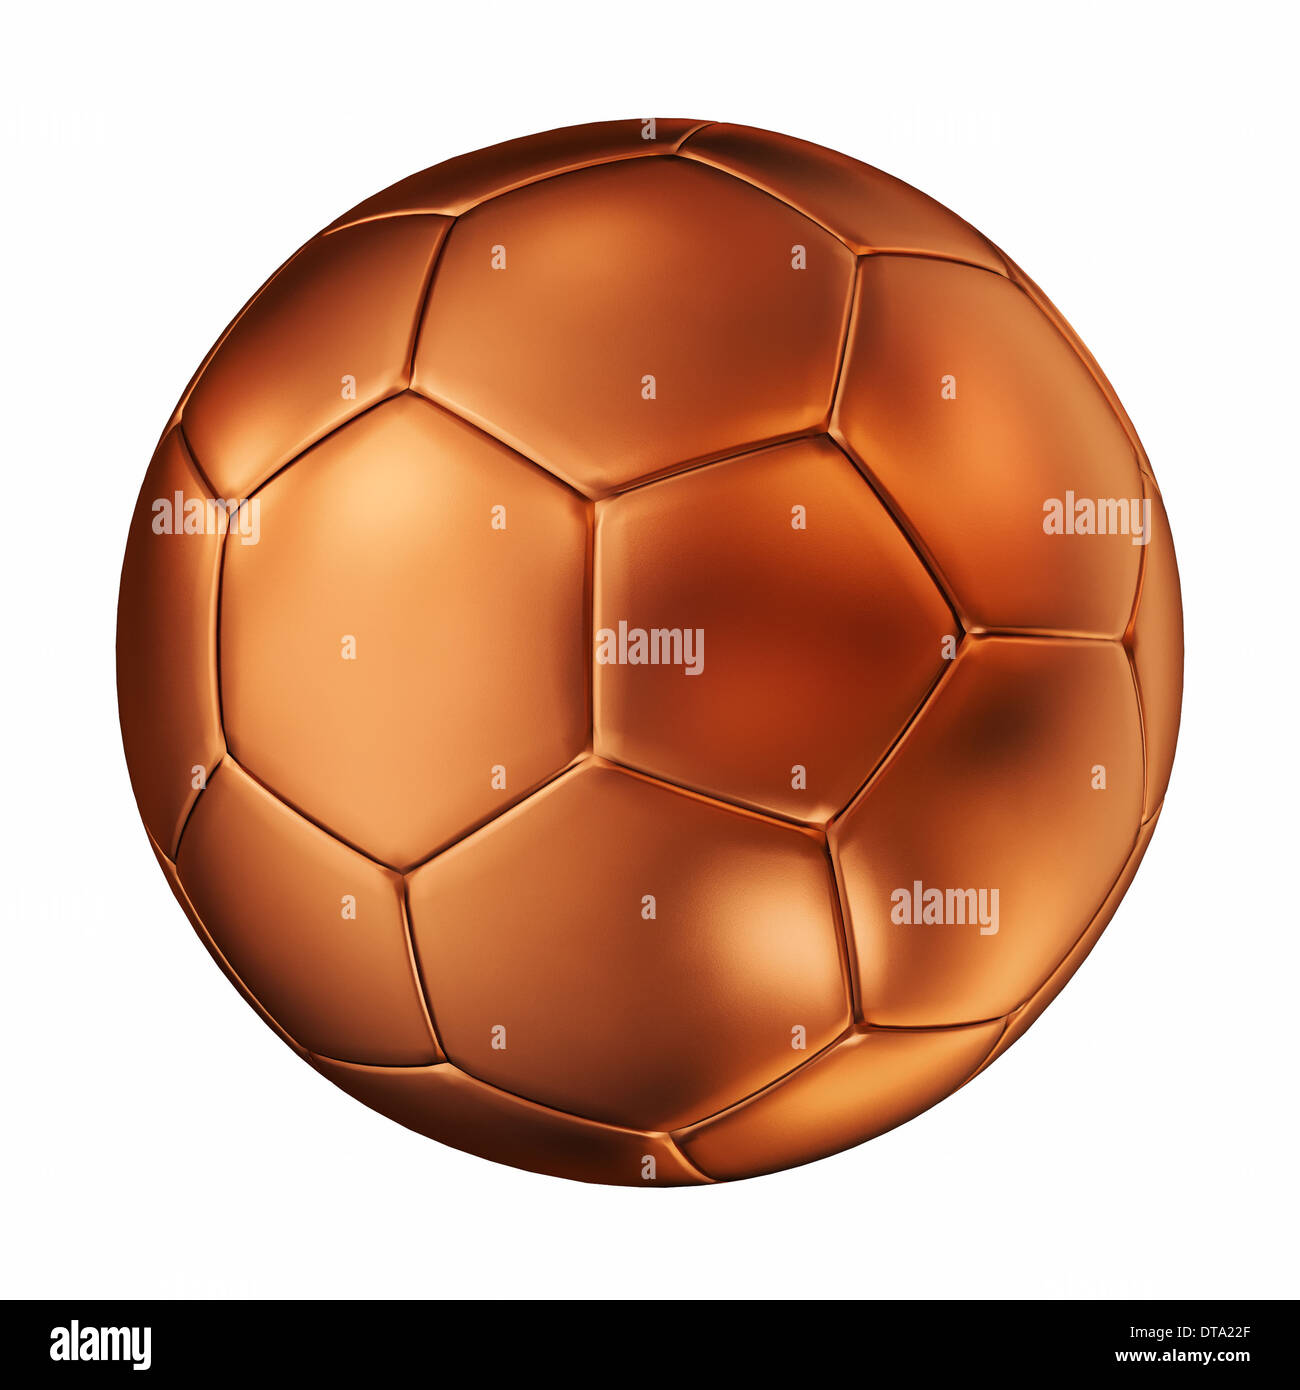 Immagine 3d di bronzo pallone da calcio Foto Stock